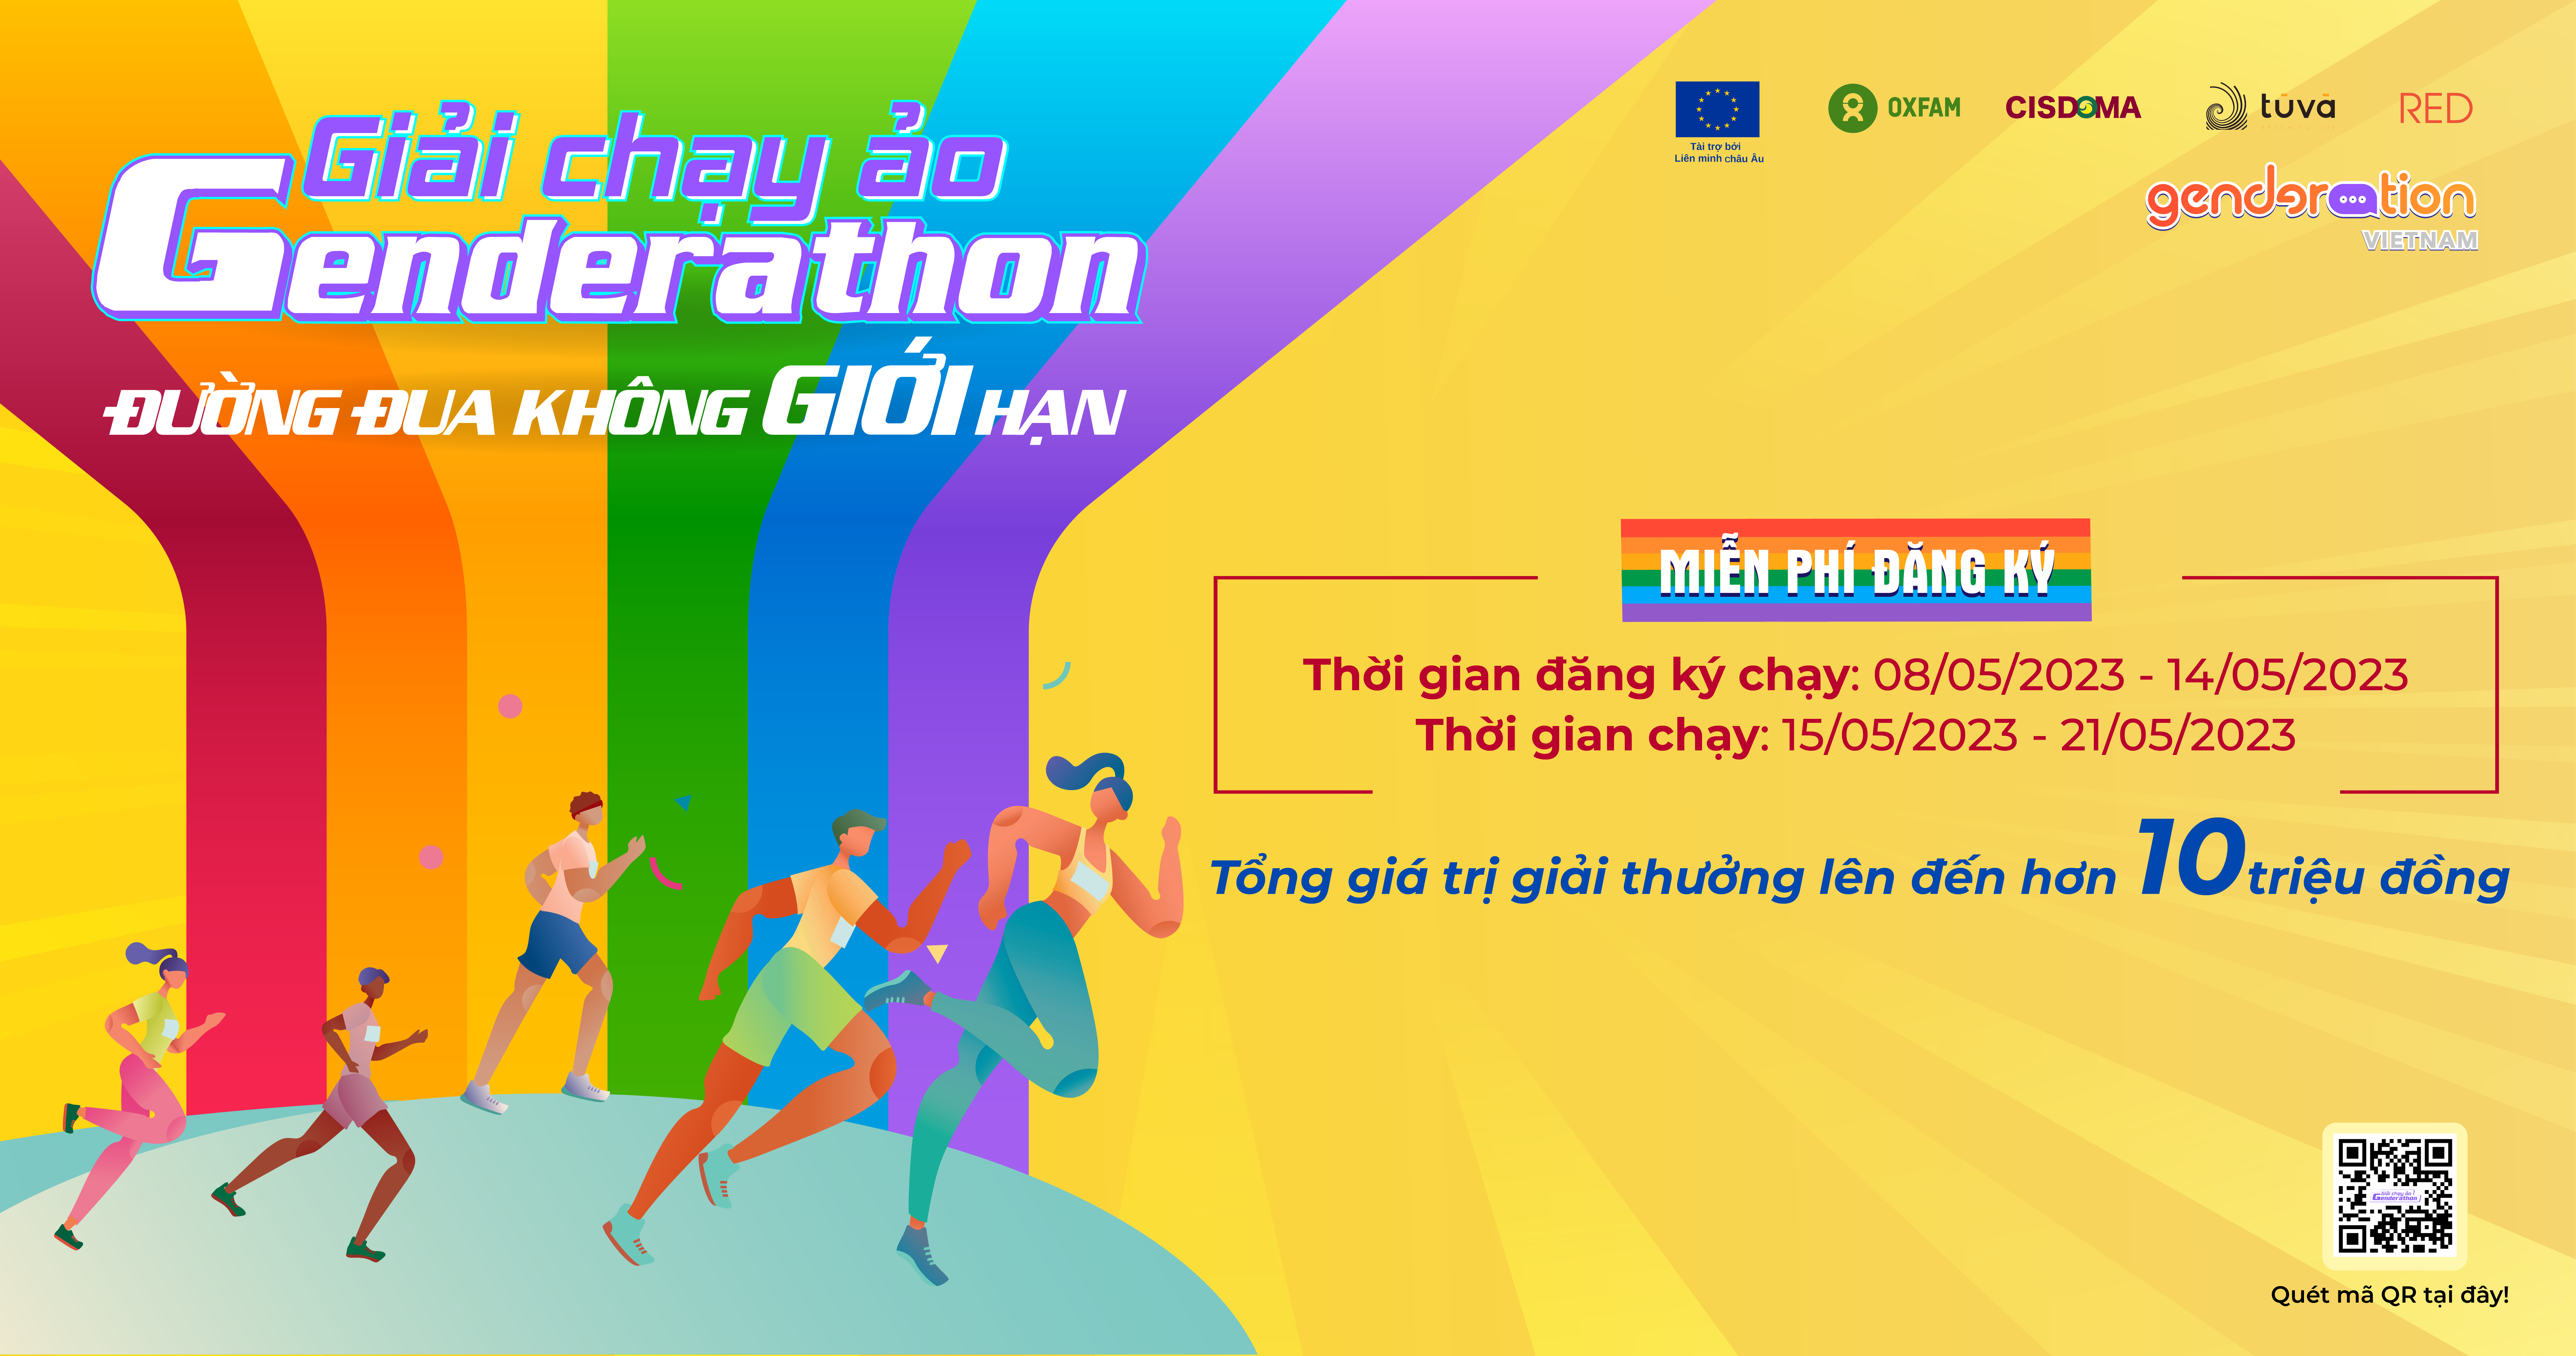 Read more about the article GIẢI CHẠY ẢO GENDERATHON 2023 – ĐƯỜNG ĐUA KHÔNG GIỚI HẠN